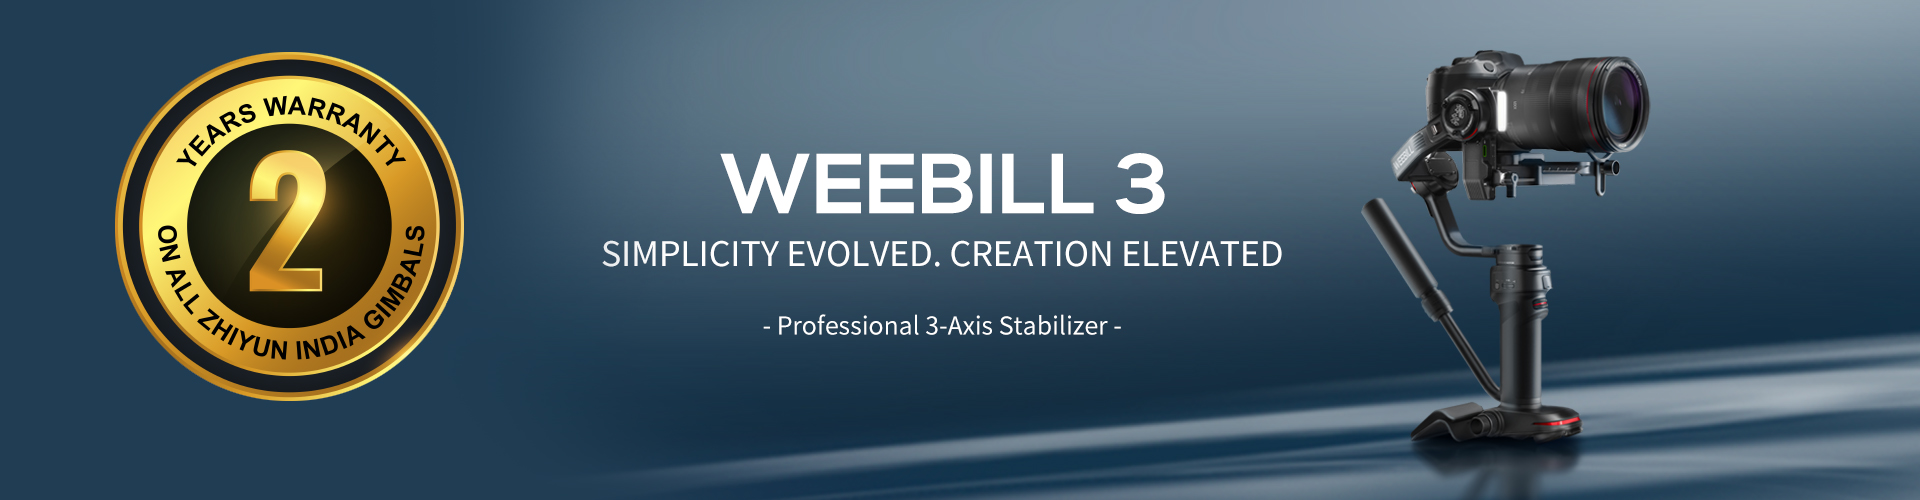 Weebill 3